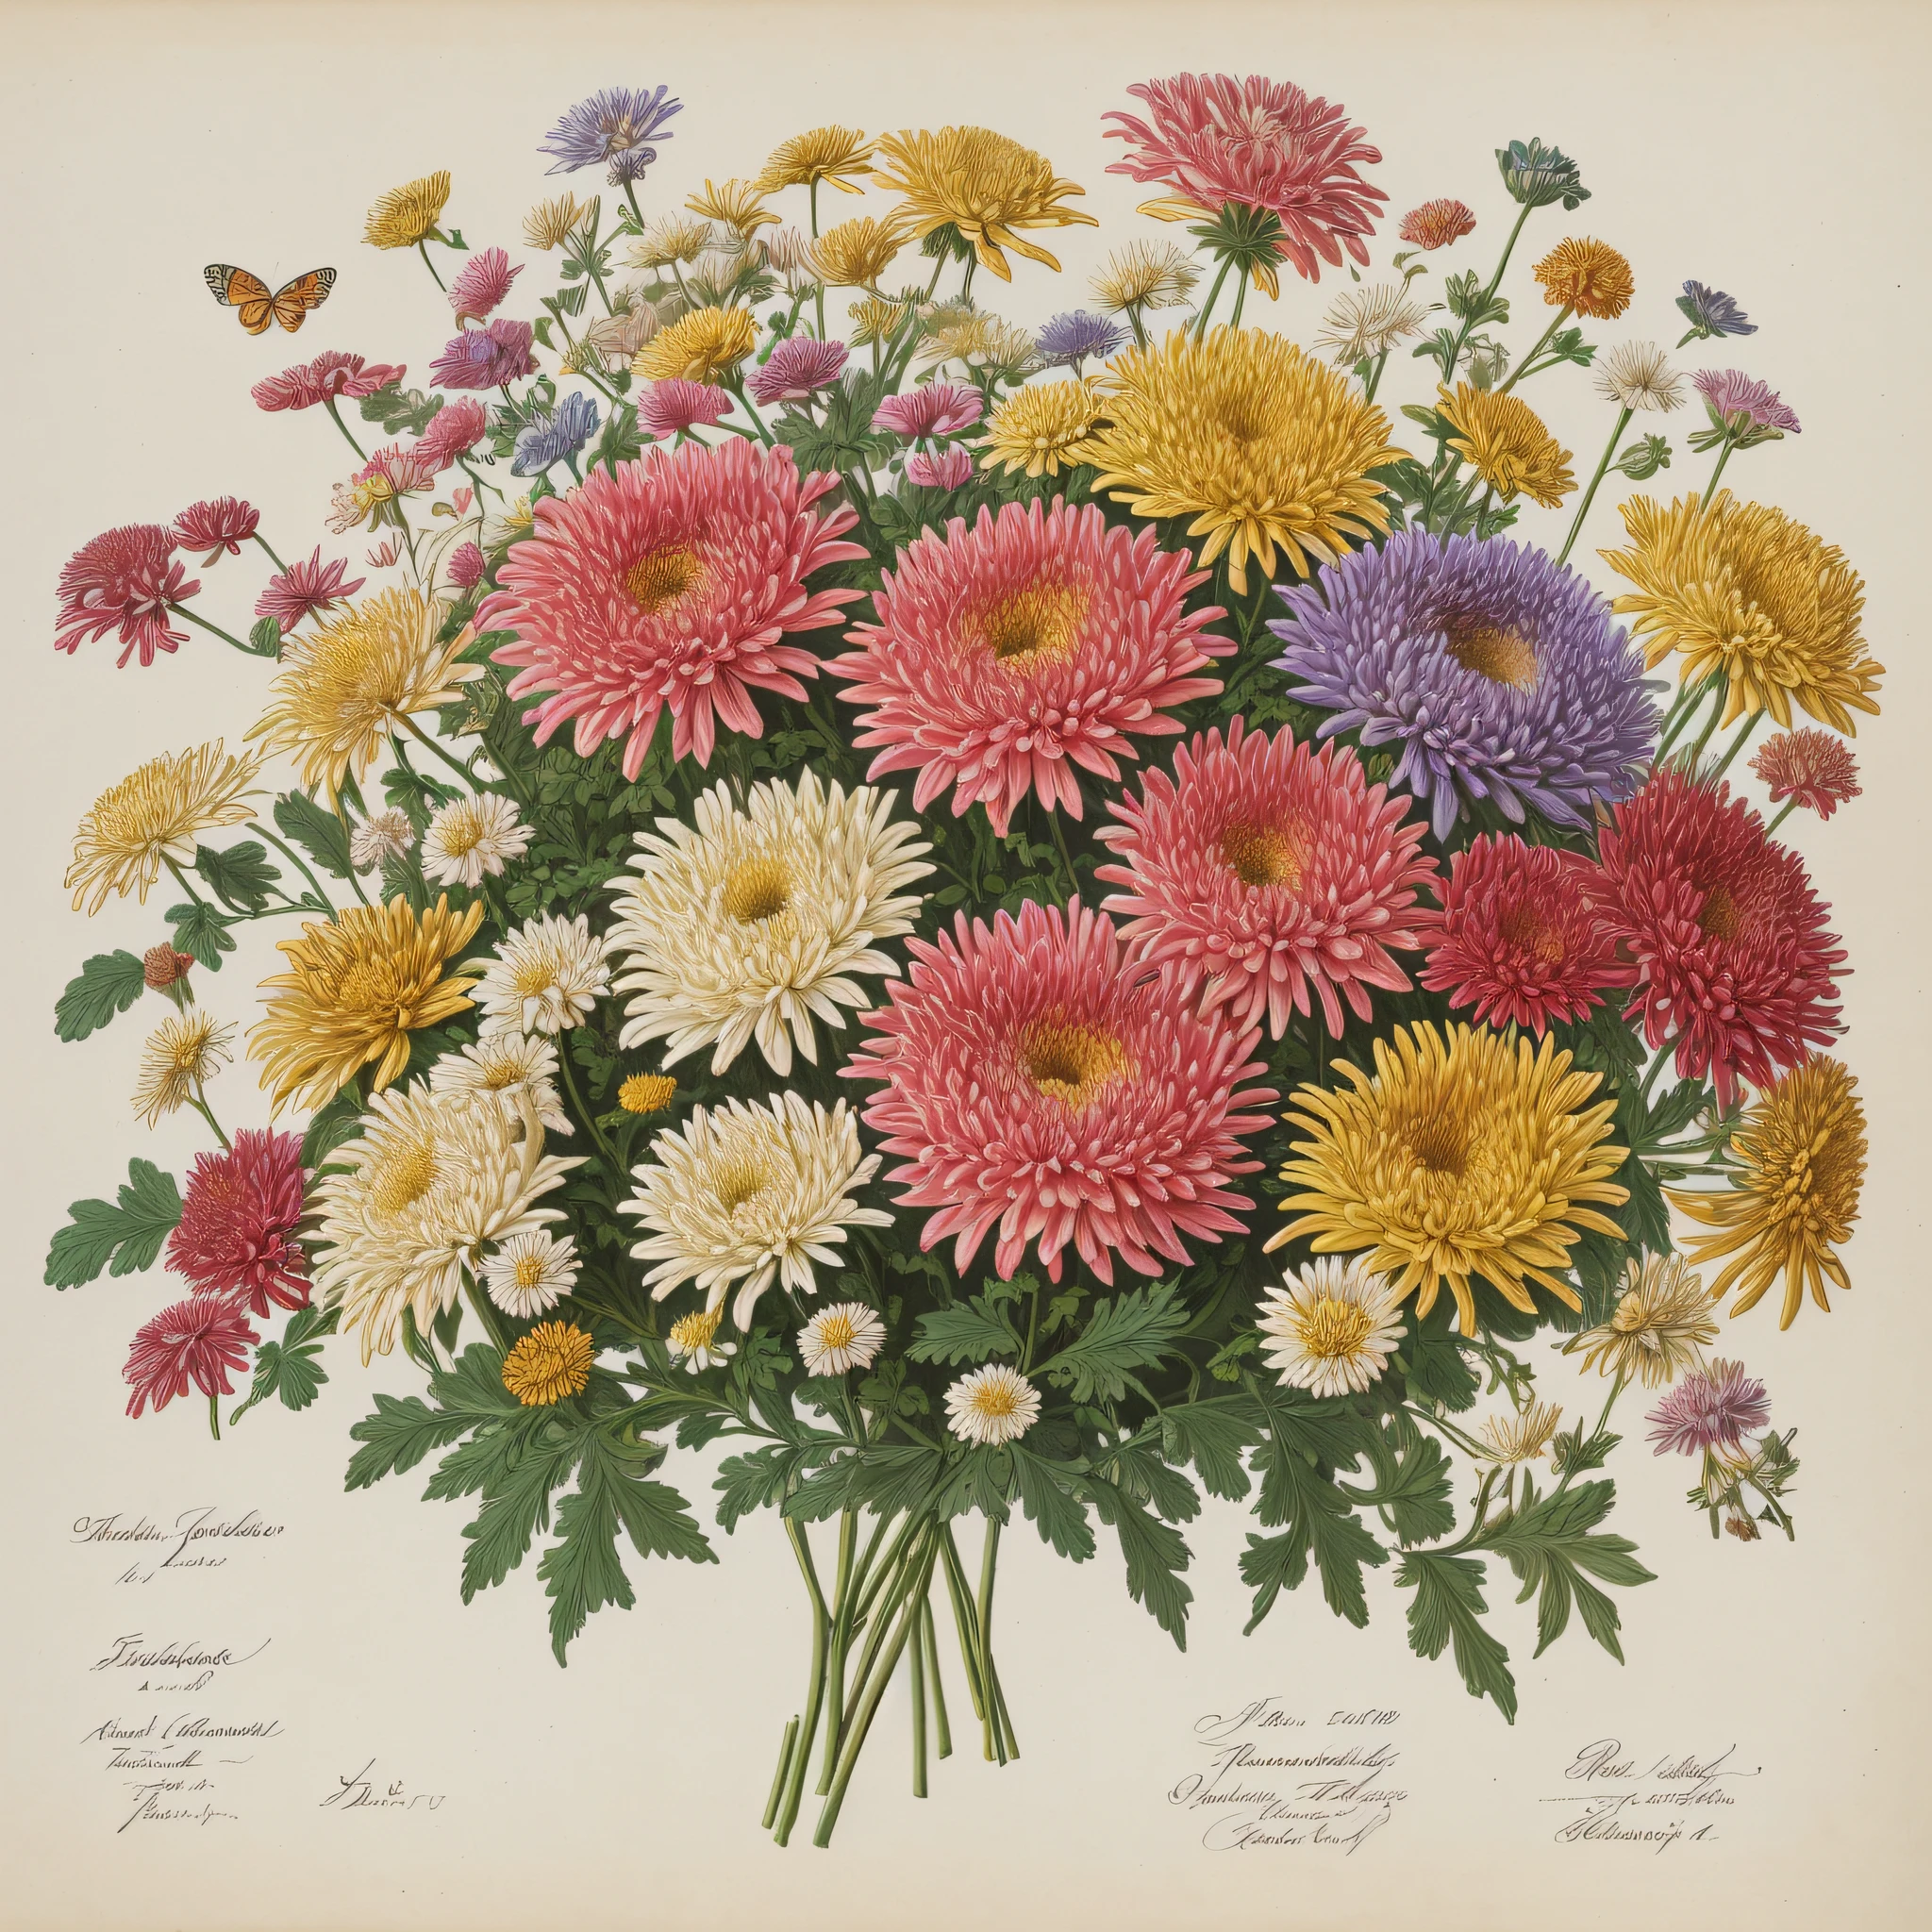 (mejor calidad: 1.2), (detallado: 1.2), (obra maestra: 1.2), Ilustraciones botánicas antiguas de mariposas y abejas., ((Ramo de crisantemos))  (1770-1775) en alta resolución por John Edwards